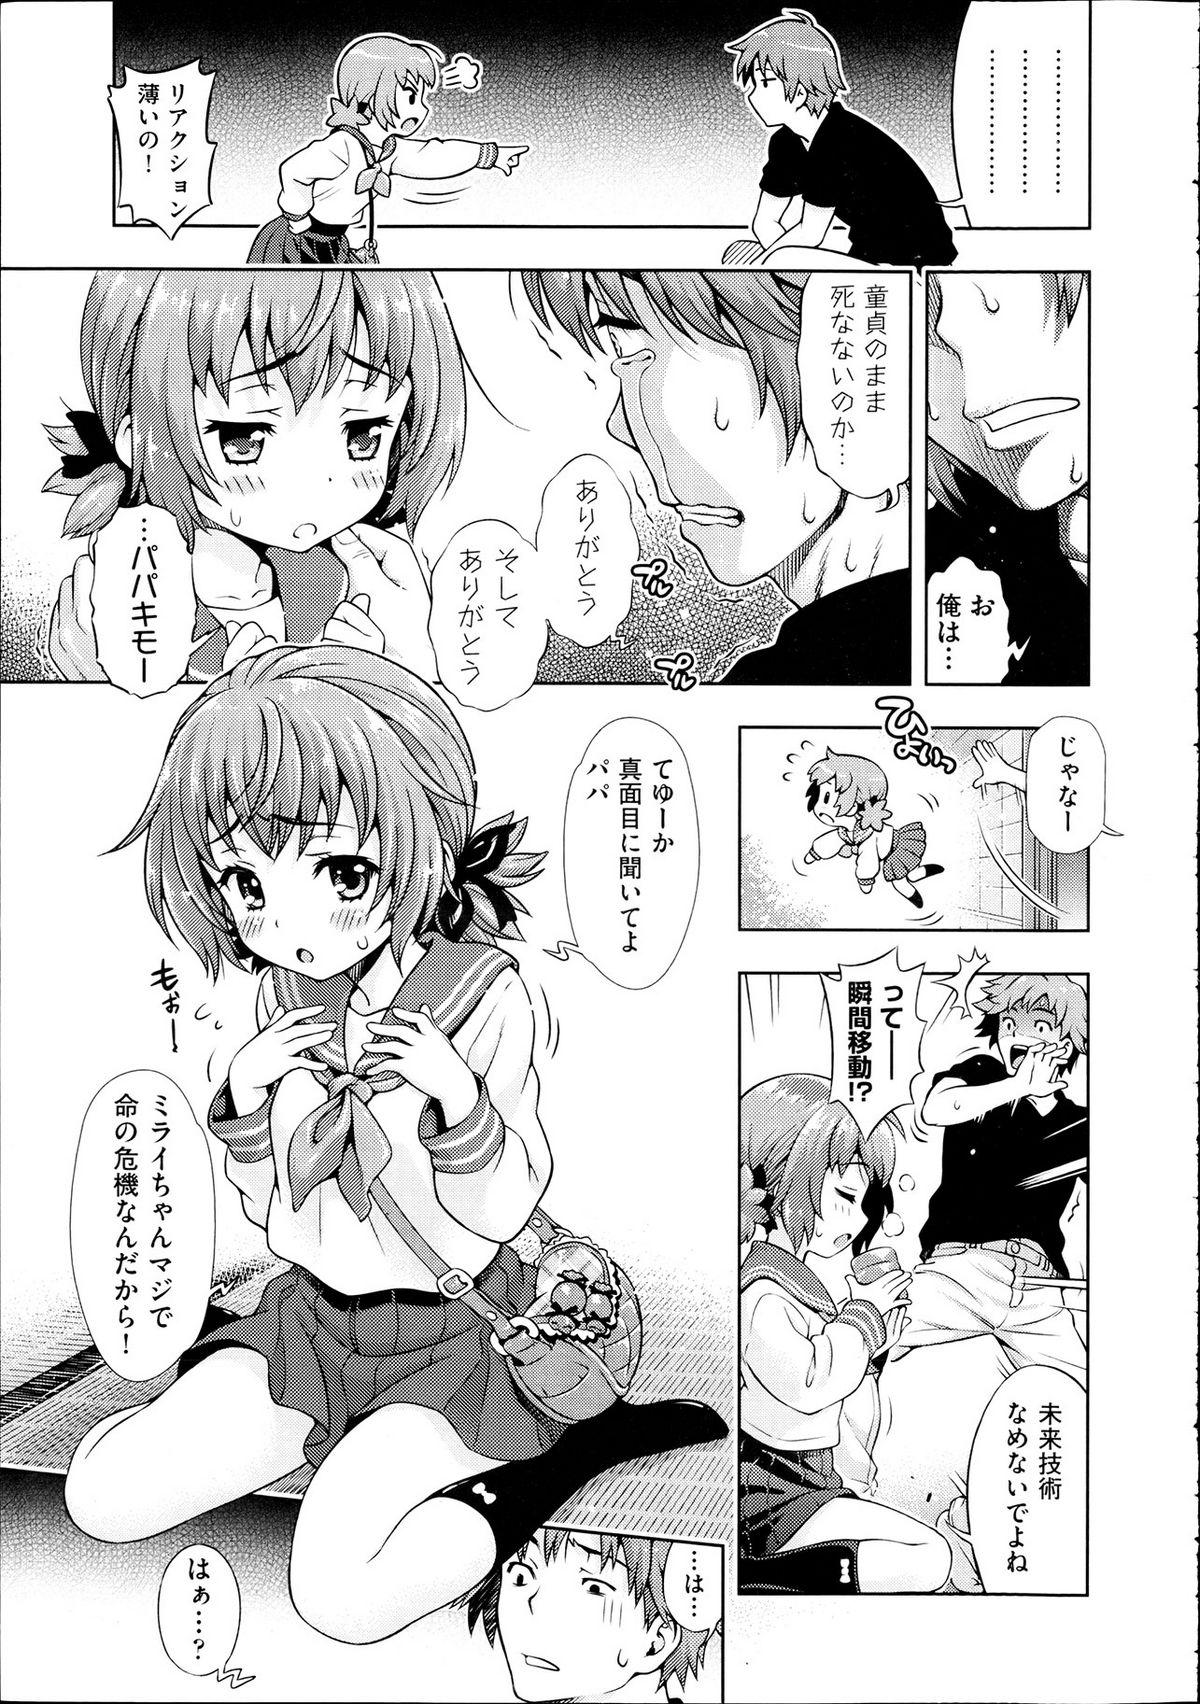 Trap Mirai kara Kimashita! Zenpen + Kouhen Pick Up - Page 3